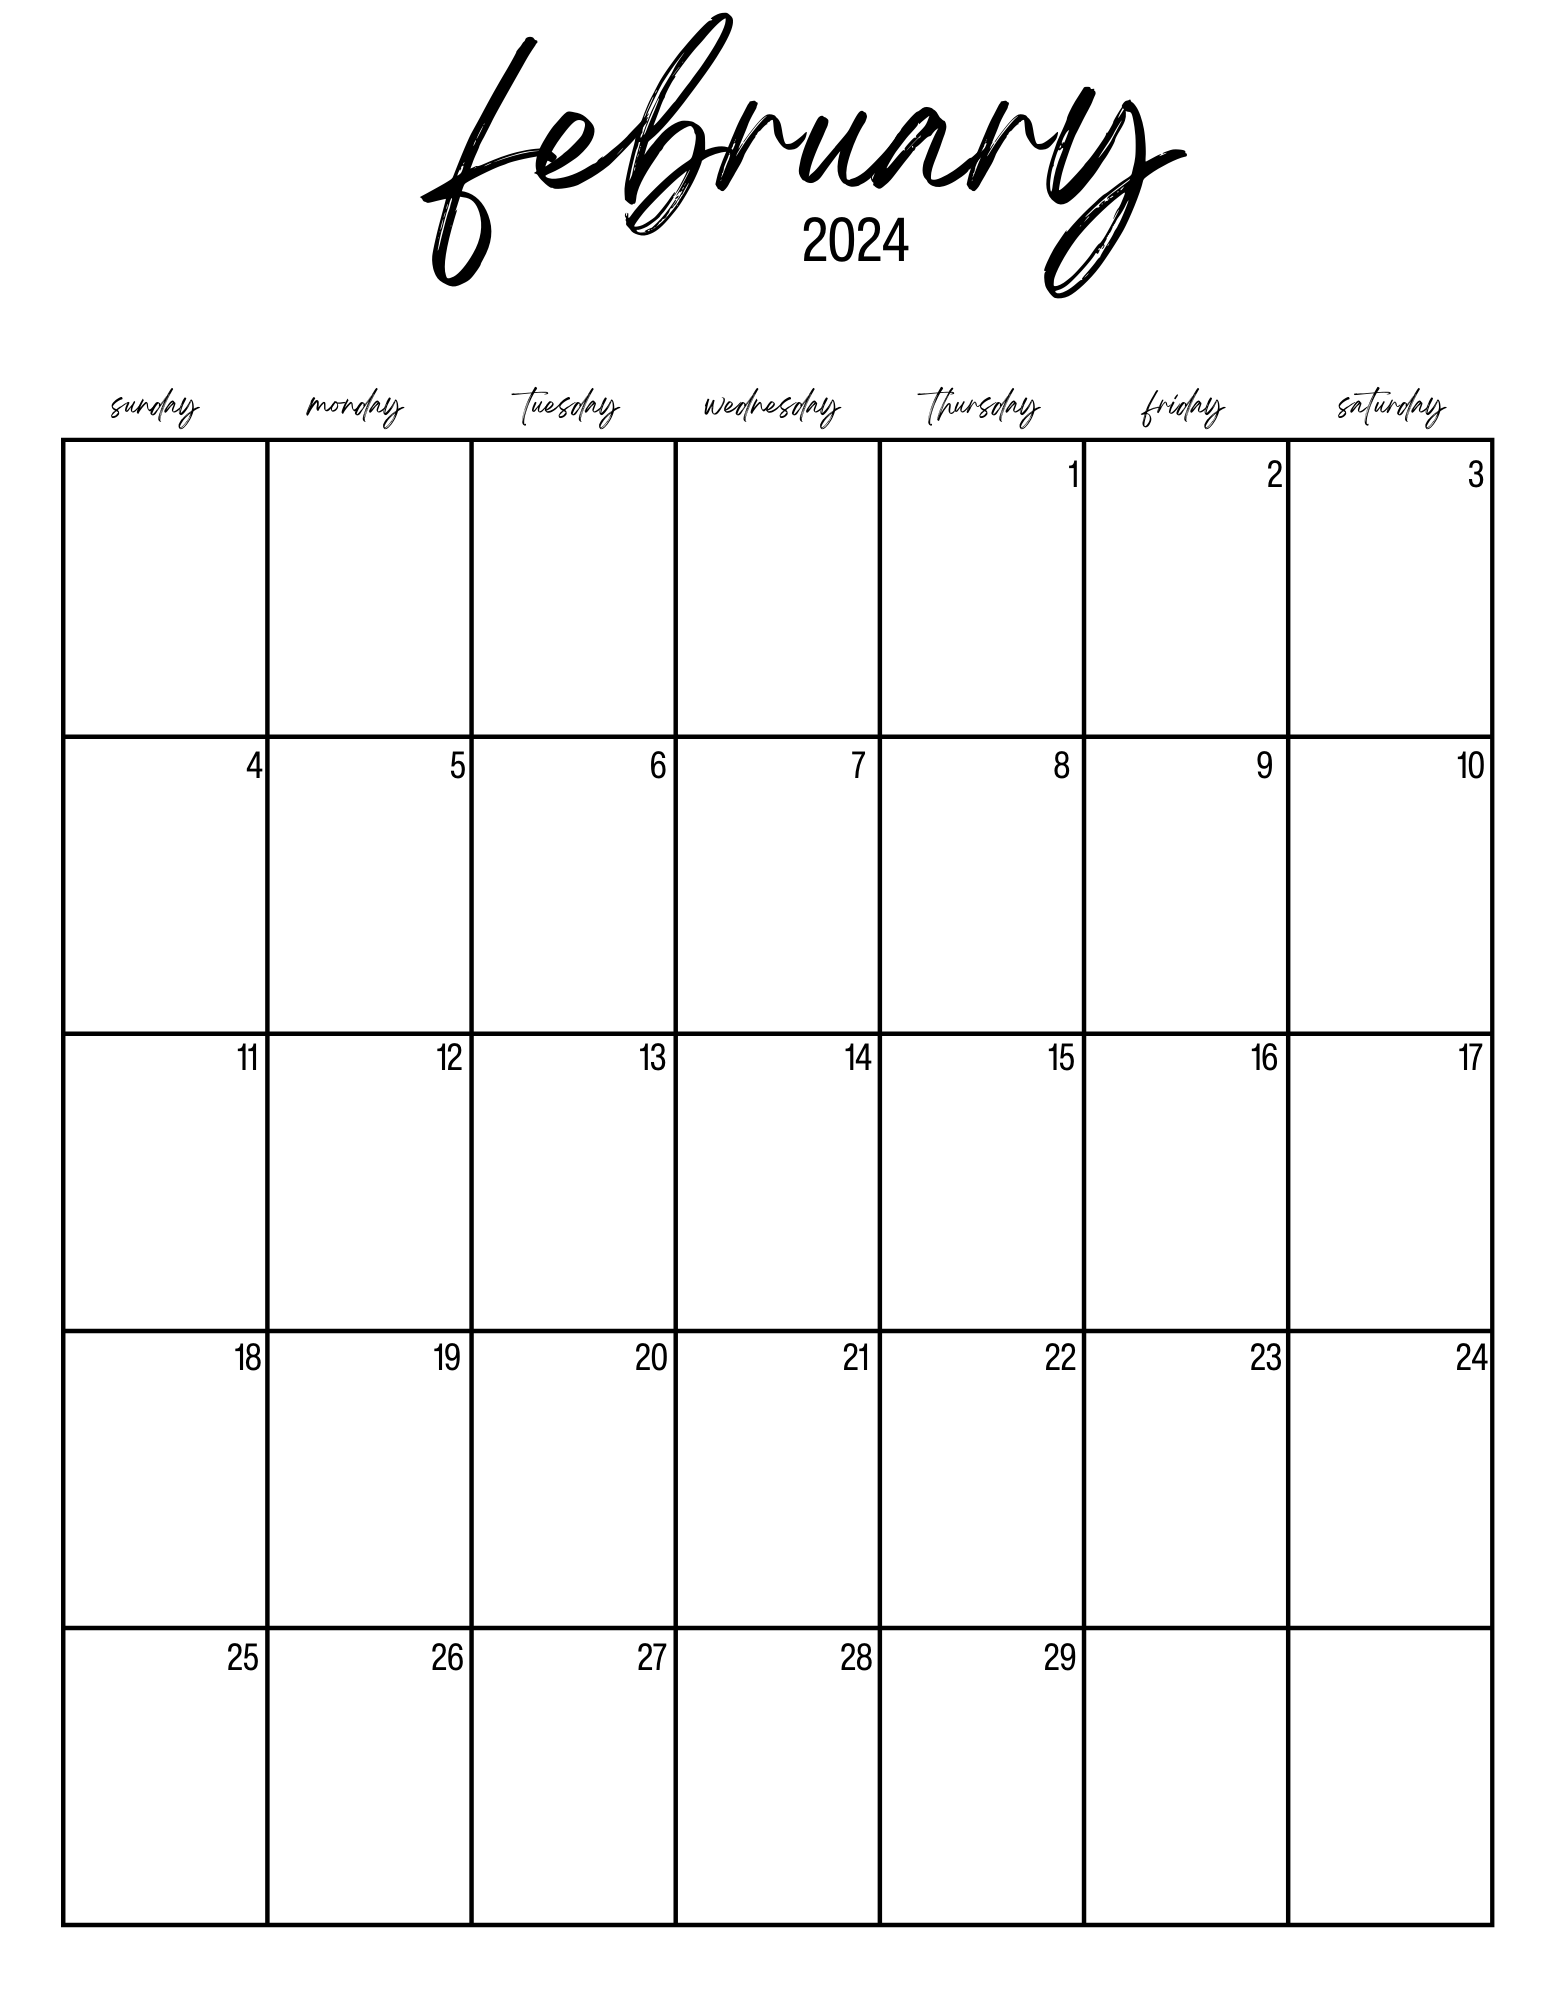 February 2024 Calendars » Paper Dream Printables